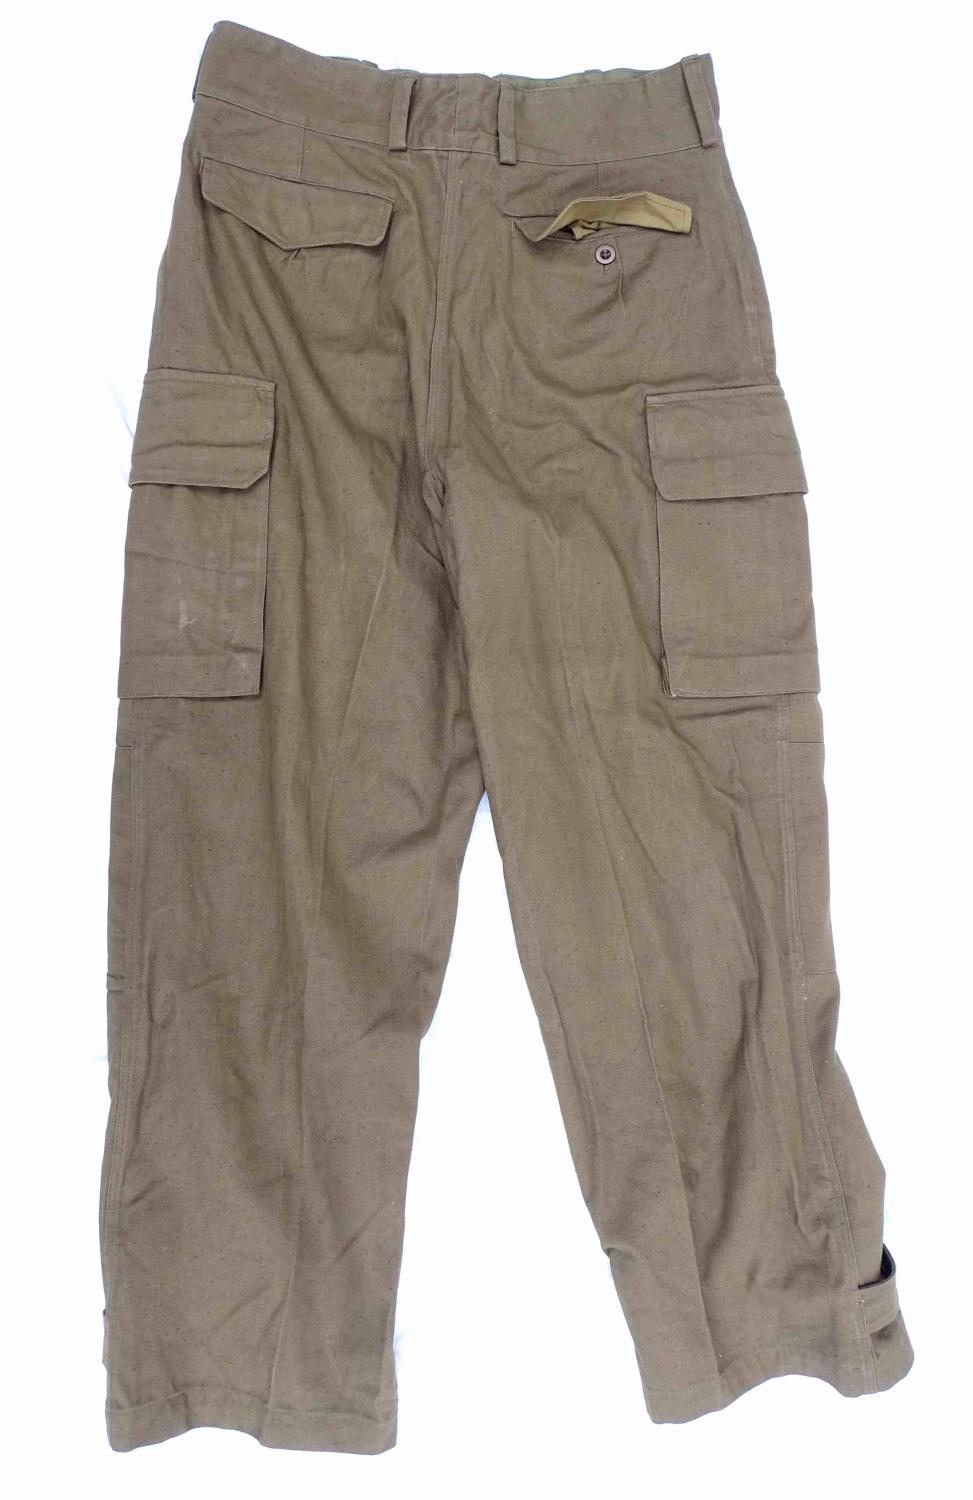 Pantalon TTA 1947/54  Guerre d&#039;Alg&eacute;rie Taille 35. Etat neuf.